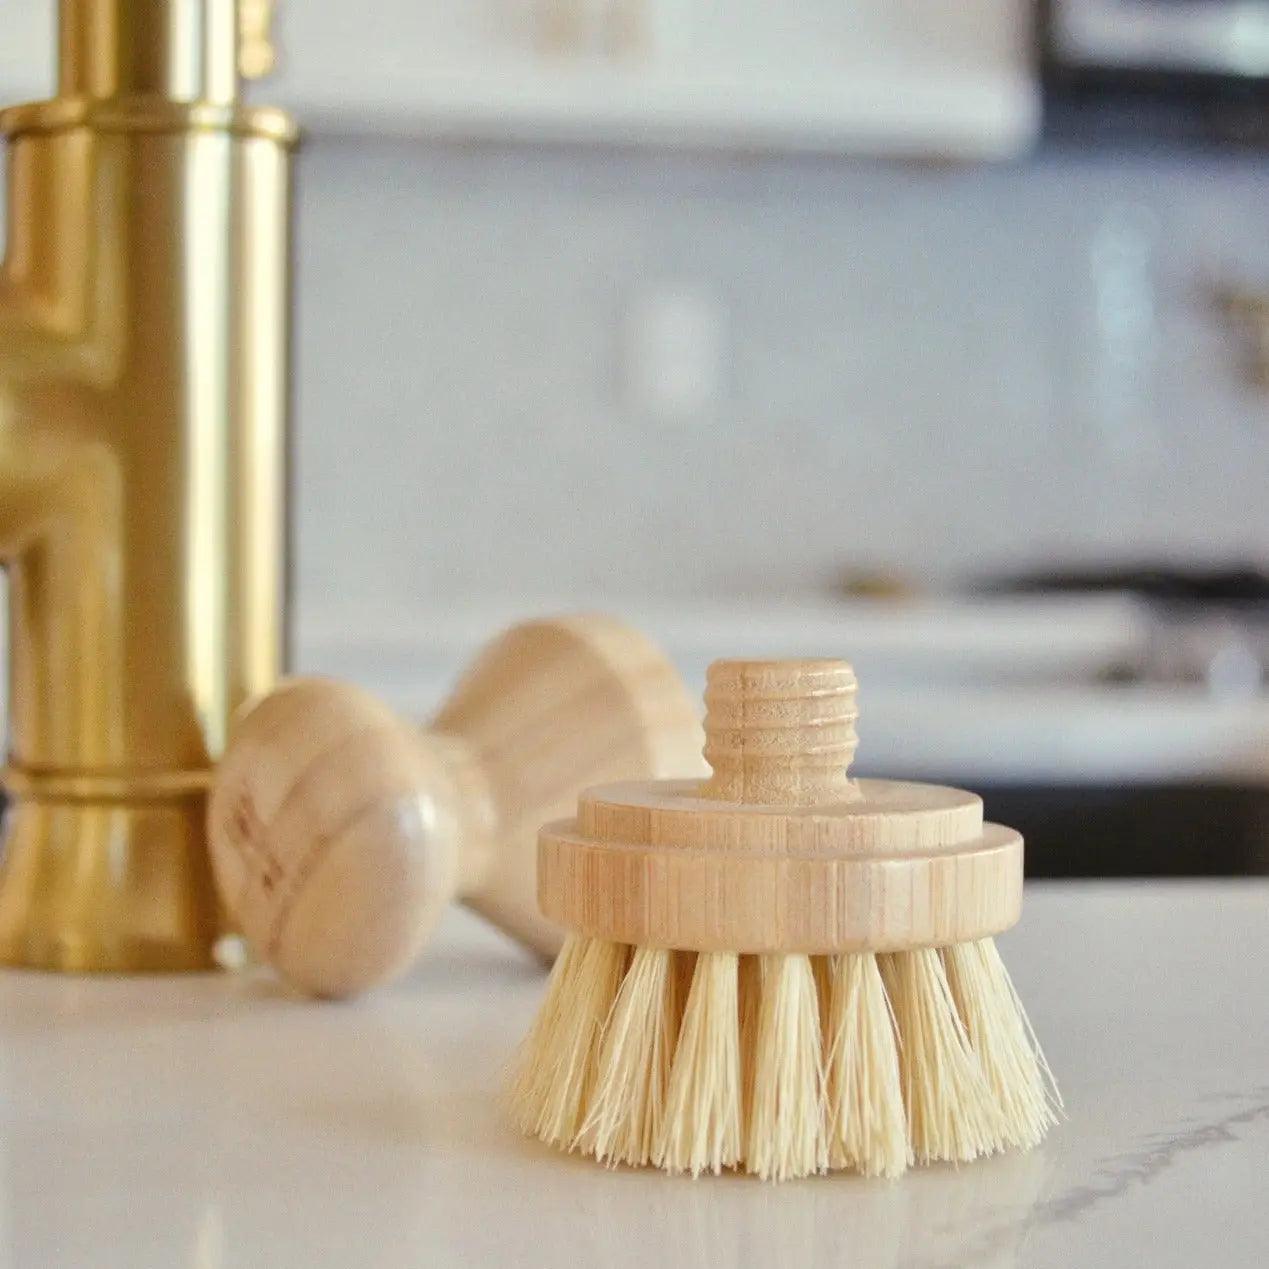 Dishwashing Brush - Modular Sisal and Bamboo Brush, Multi-Purpose - Ninth & Pine